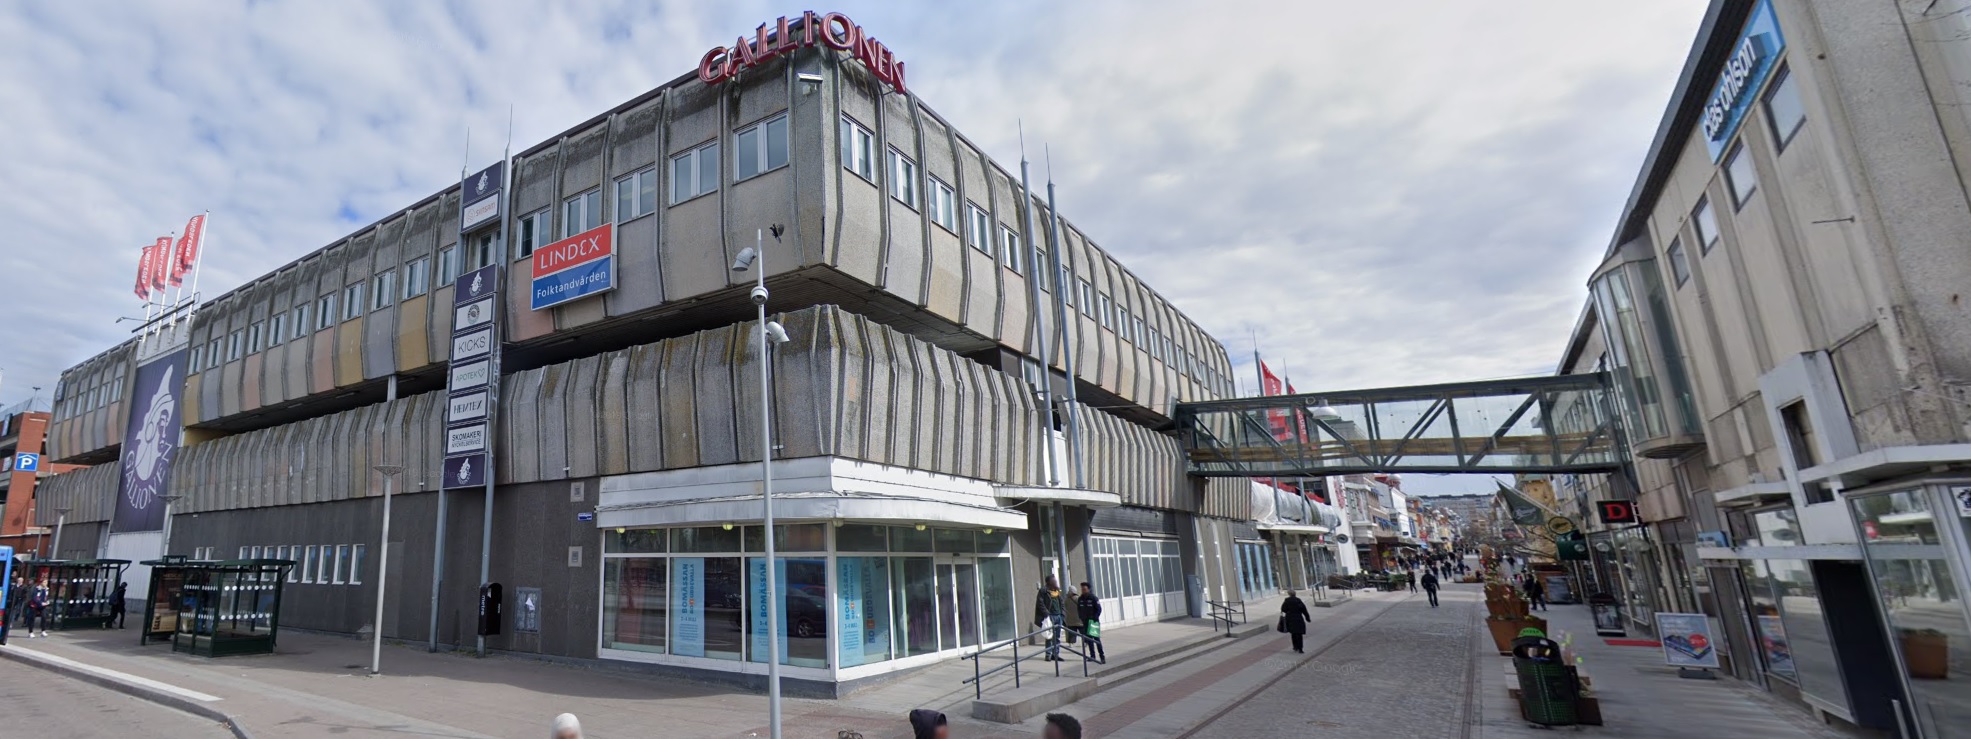 Är Galleria Gallionen i Uddevalla Sveriges fulaste byggnad genom tiderna?